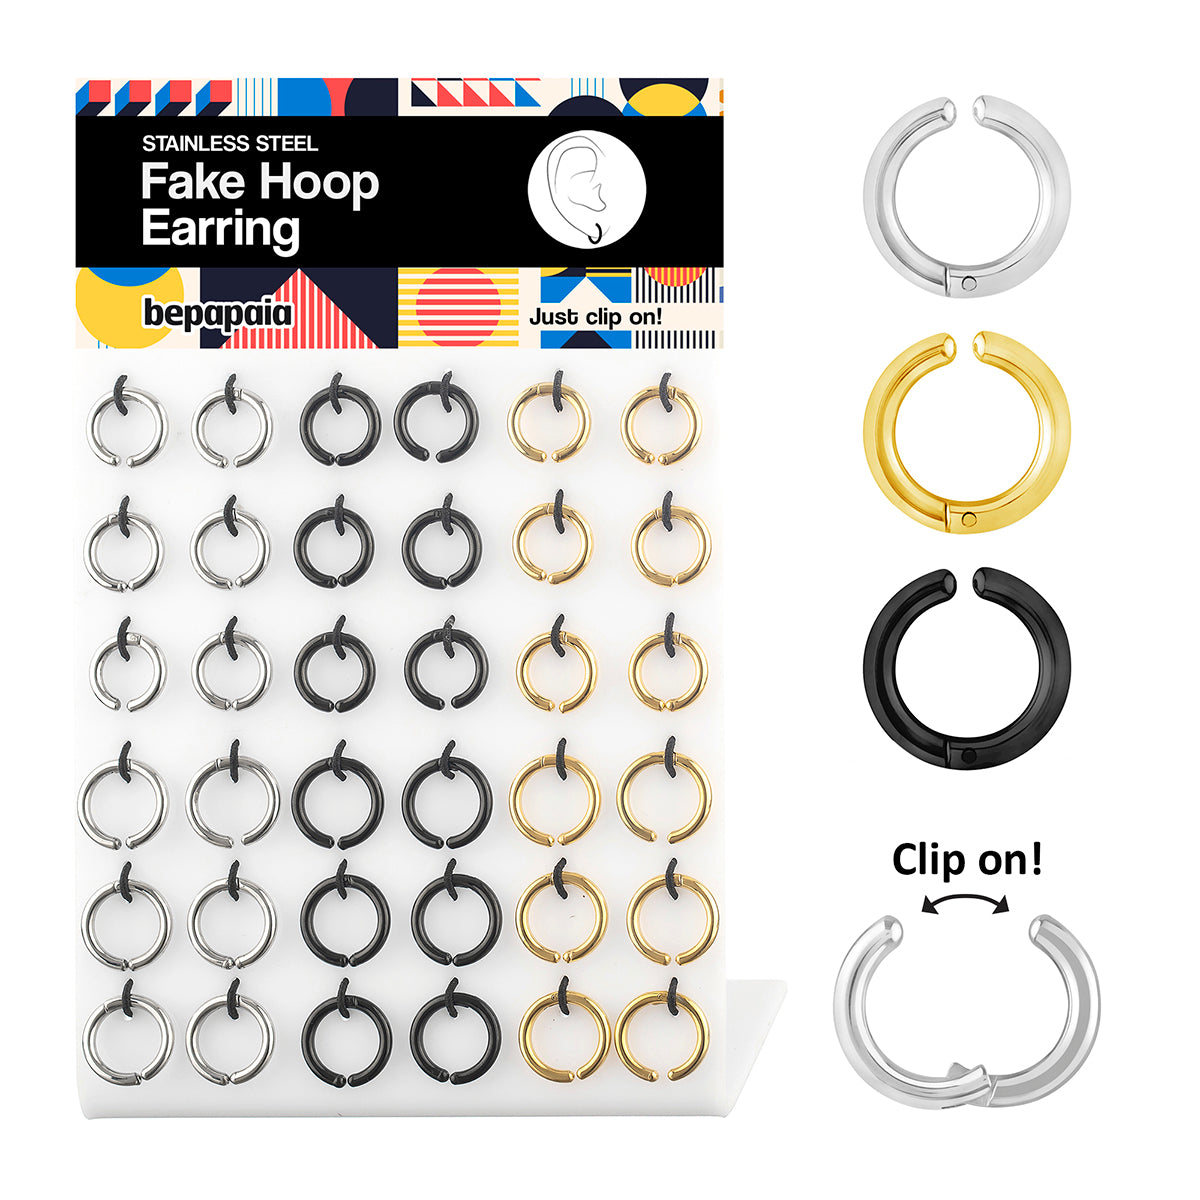 Fake hoop earrings